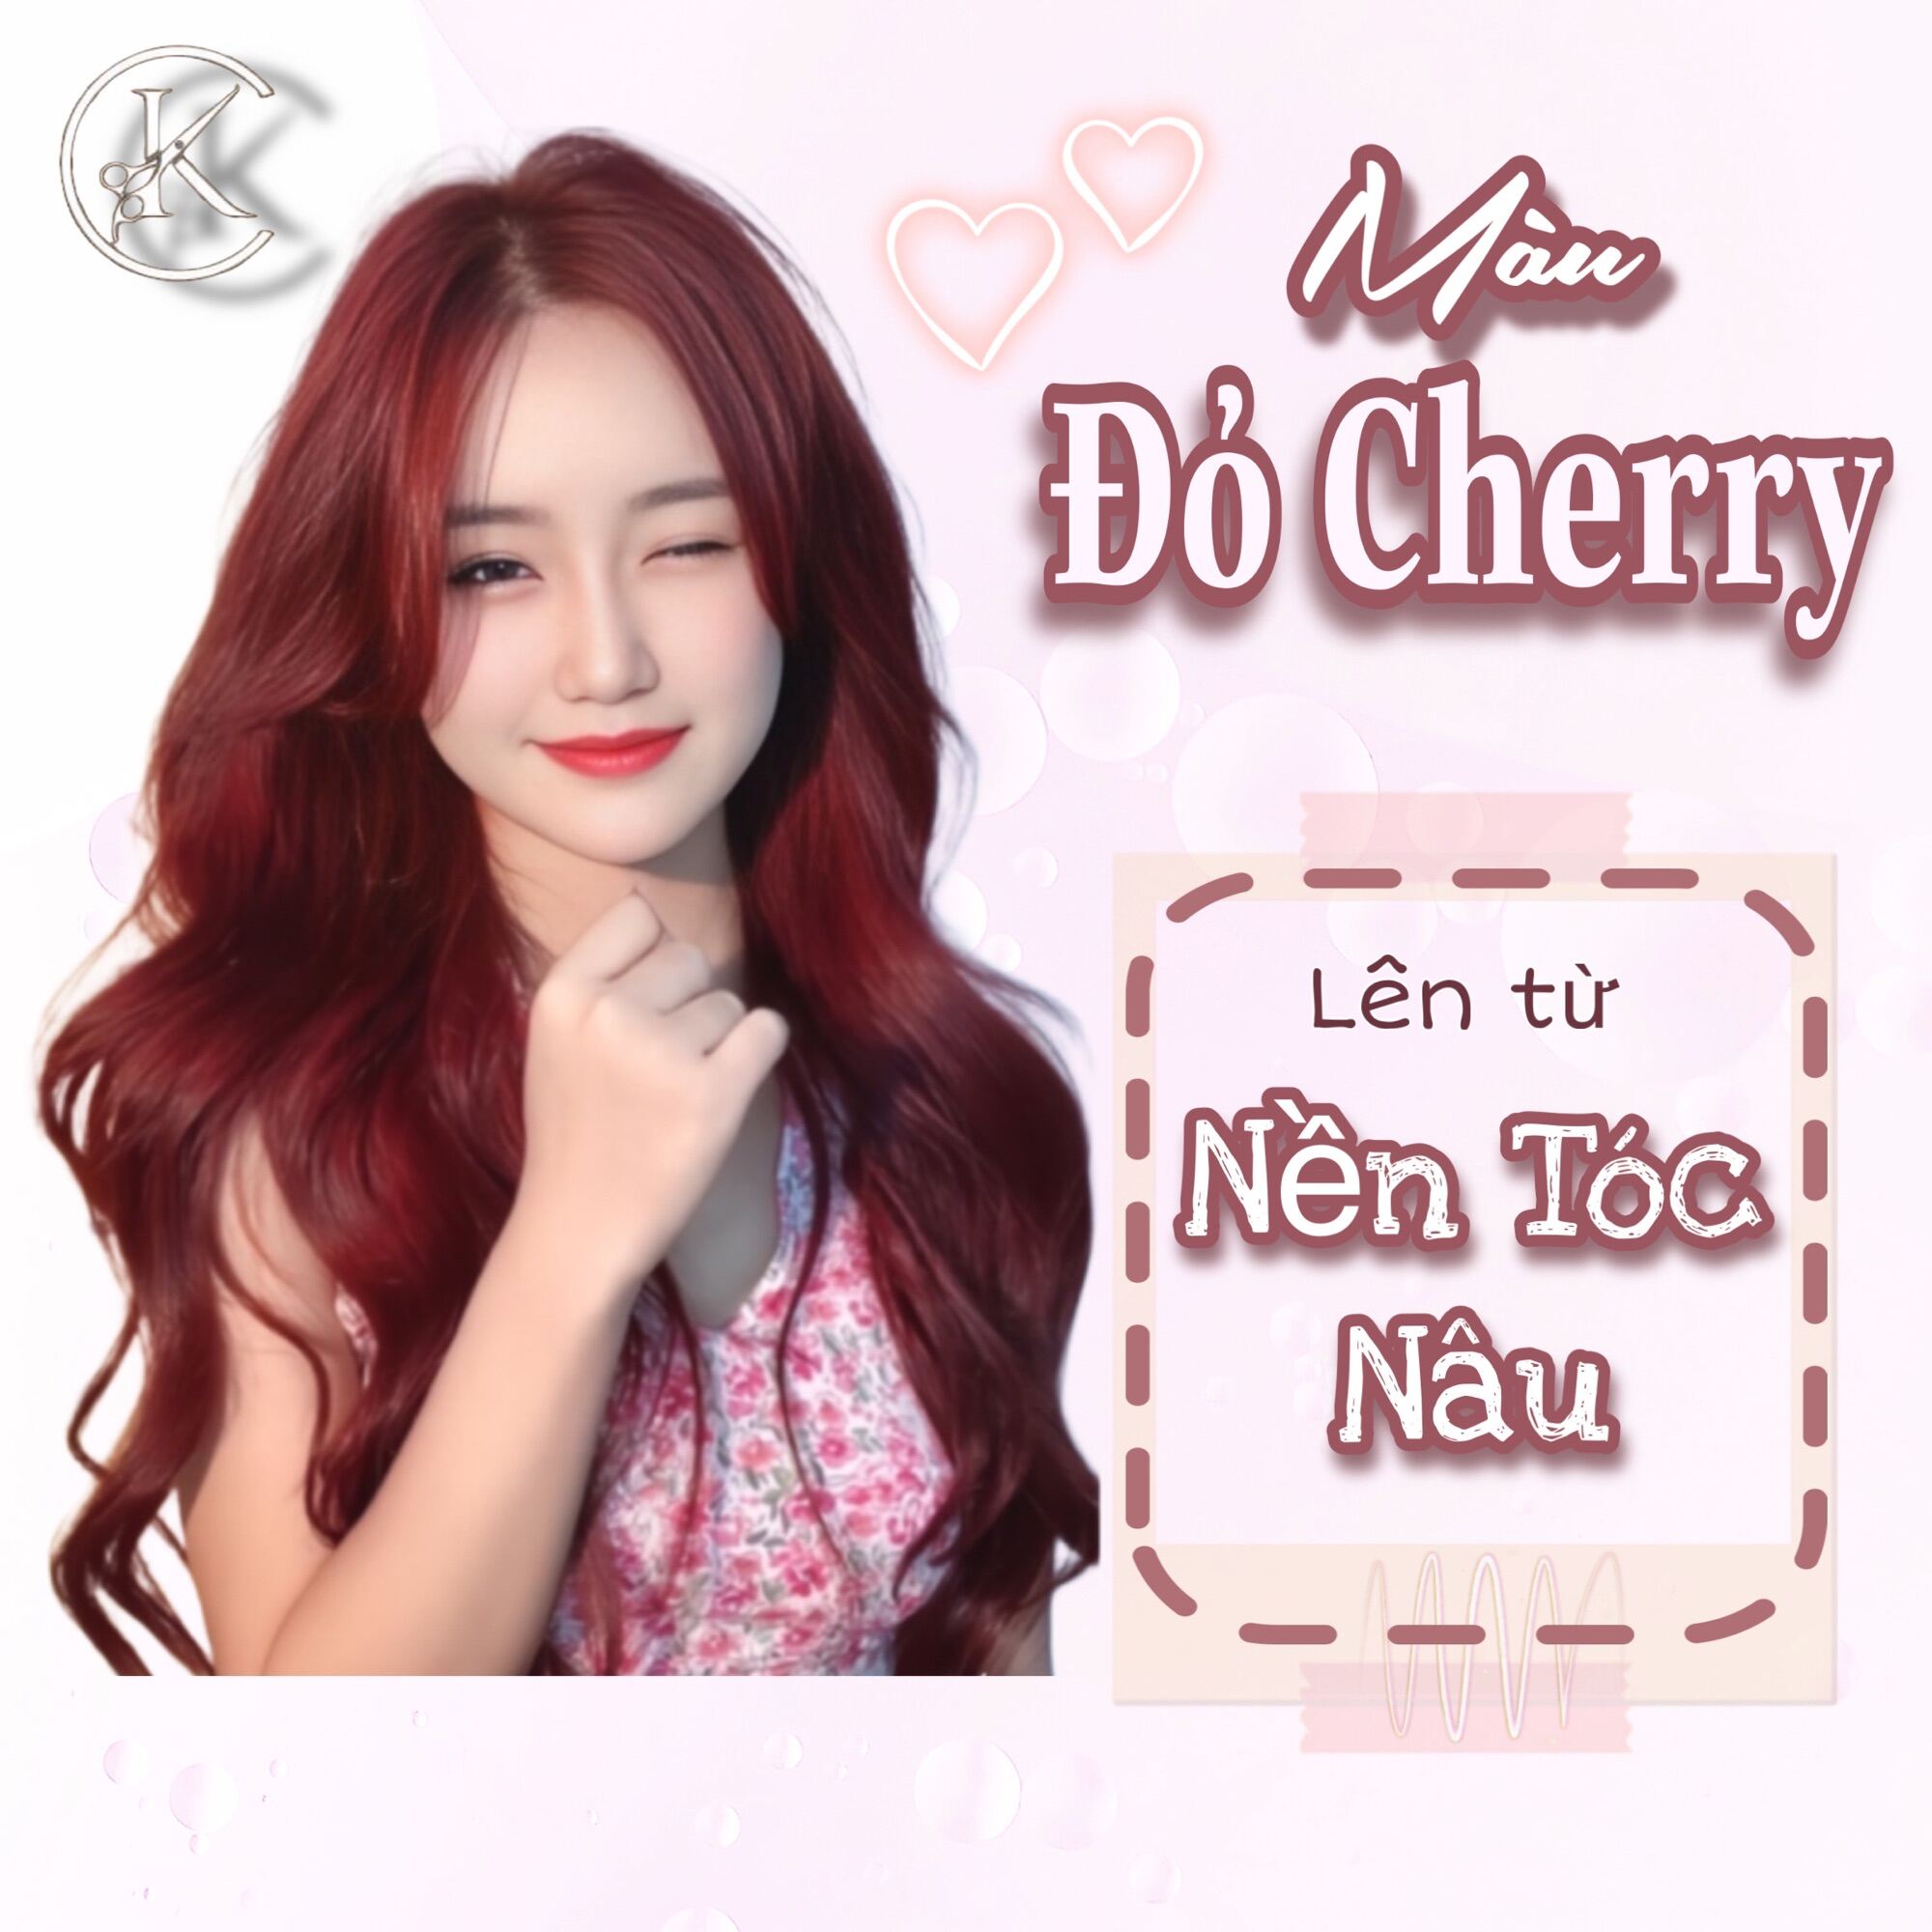 Nhuộm đỏ cherry có cần tẩy tóc không Lên màu từ nền nào  TH Điện Biên  Đông